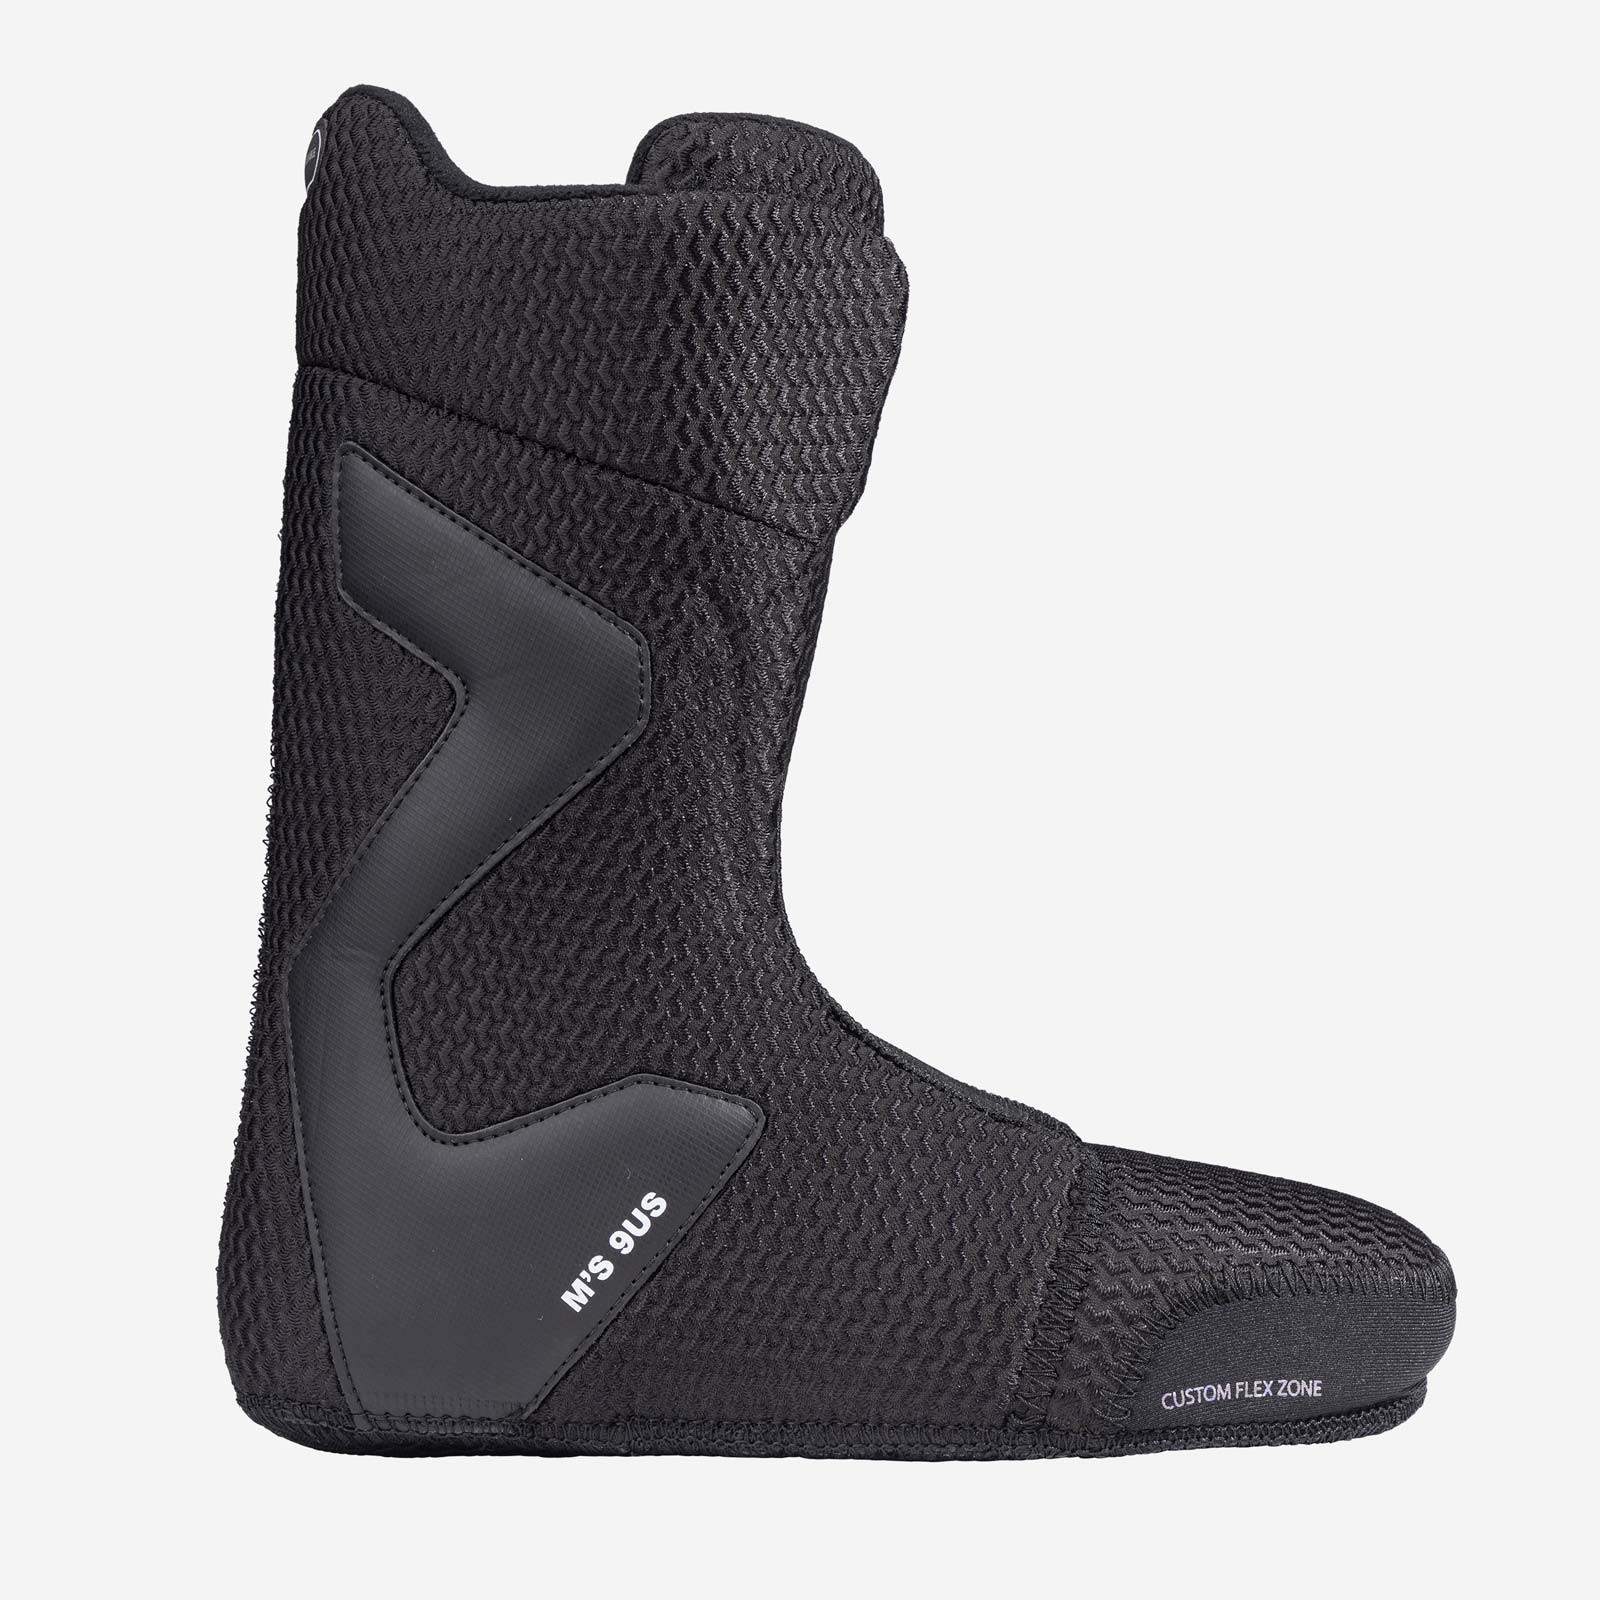 Nidecker Snowboard Boots Rift Black